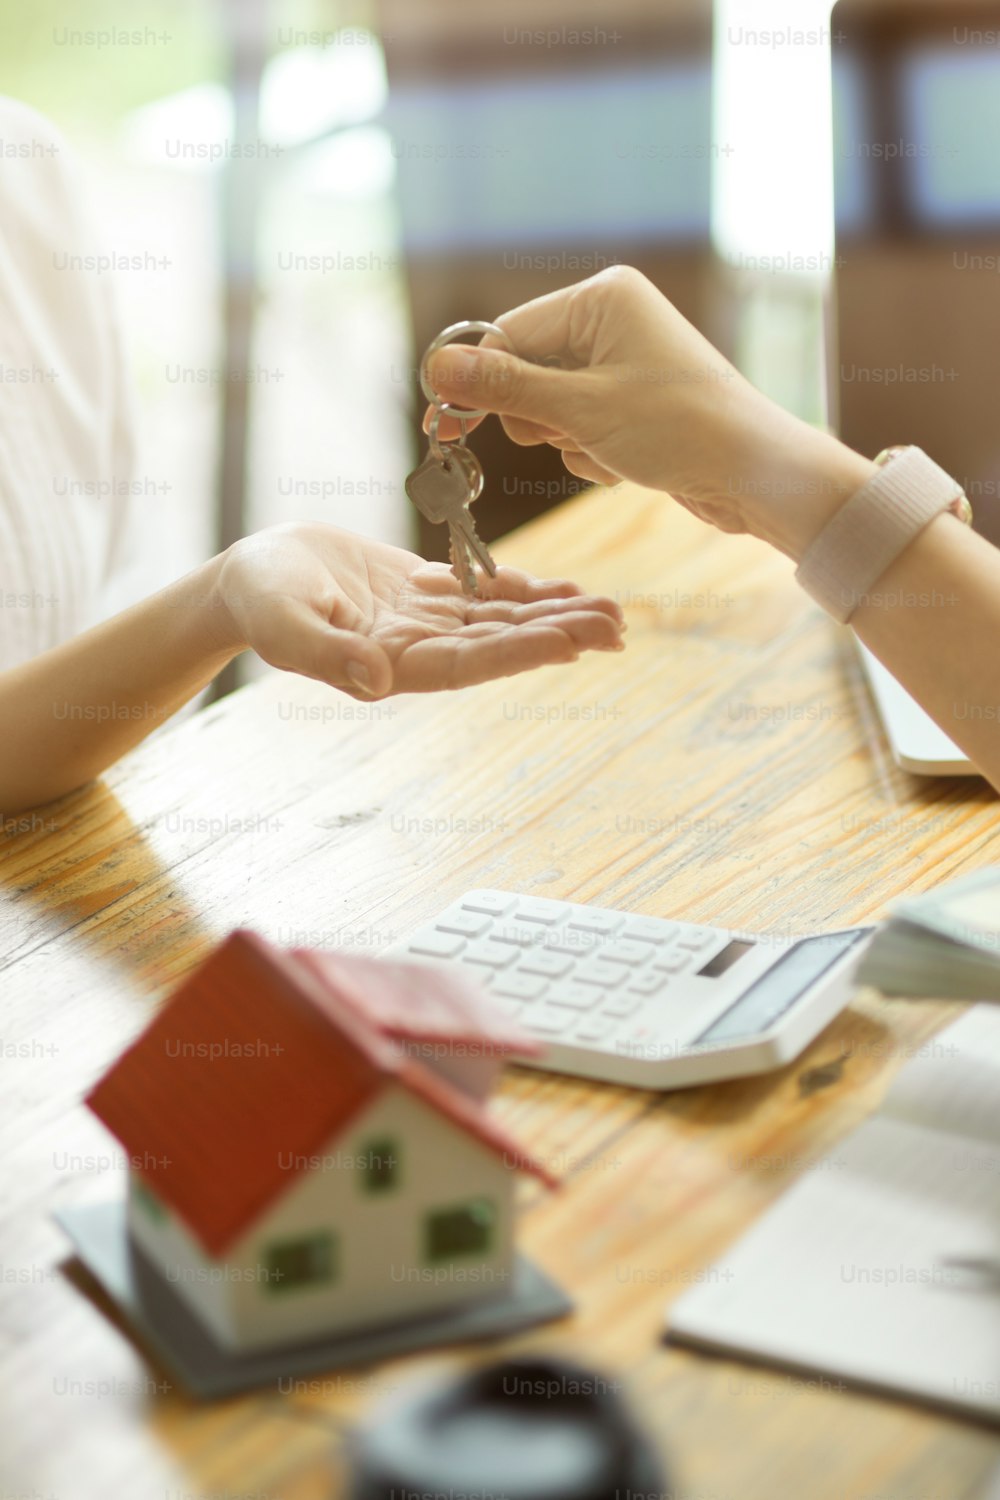 Imagen de primer plano de un agente inmobiliario entregando la llave de una casa a un nuevo inquilino después de recibir un depósito de alquiler.